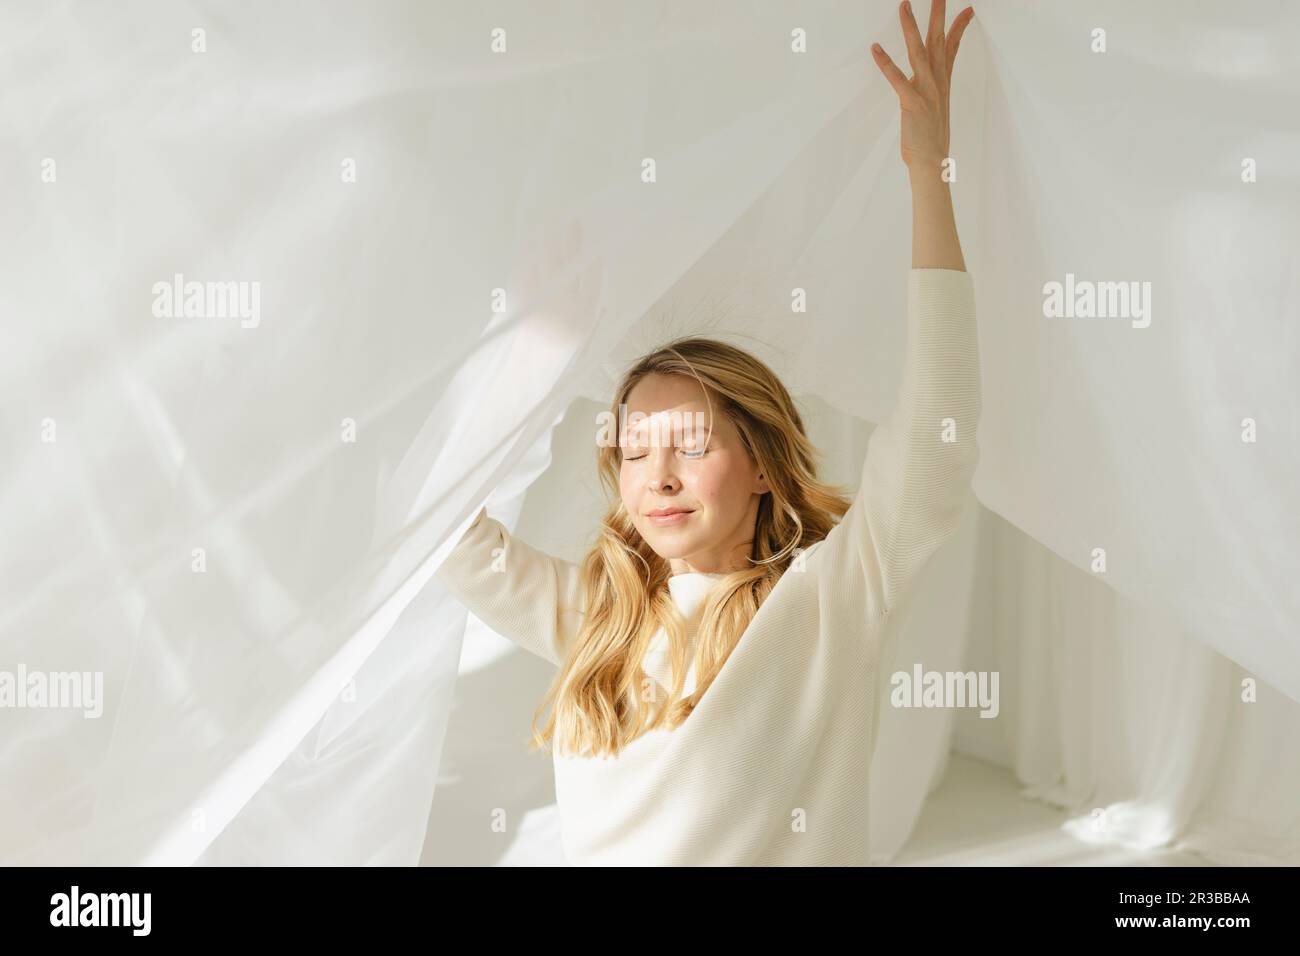 Femme blonde avec les yeux fermés et les bras levés sous un rideau blanc translucide Banque D'Images